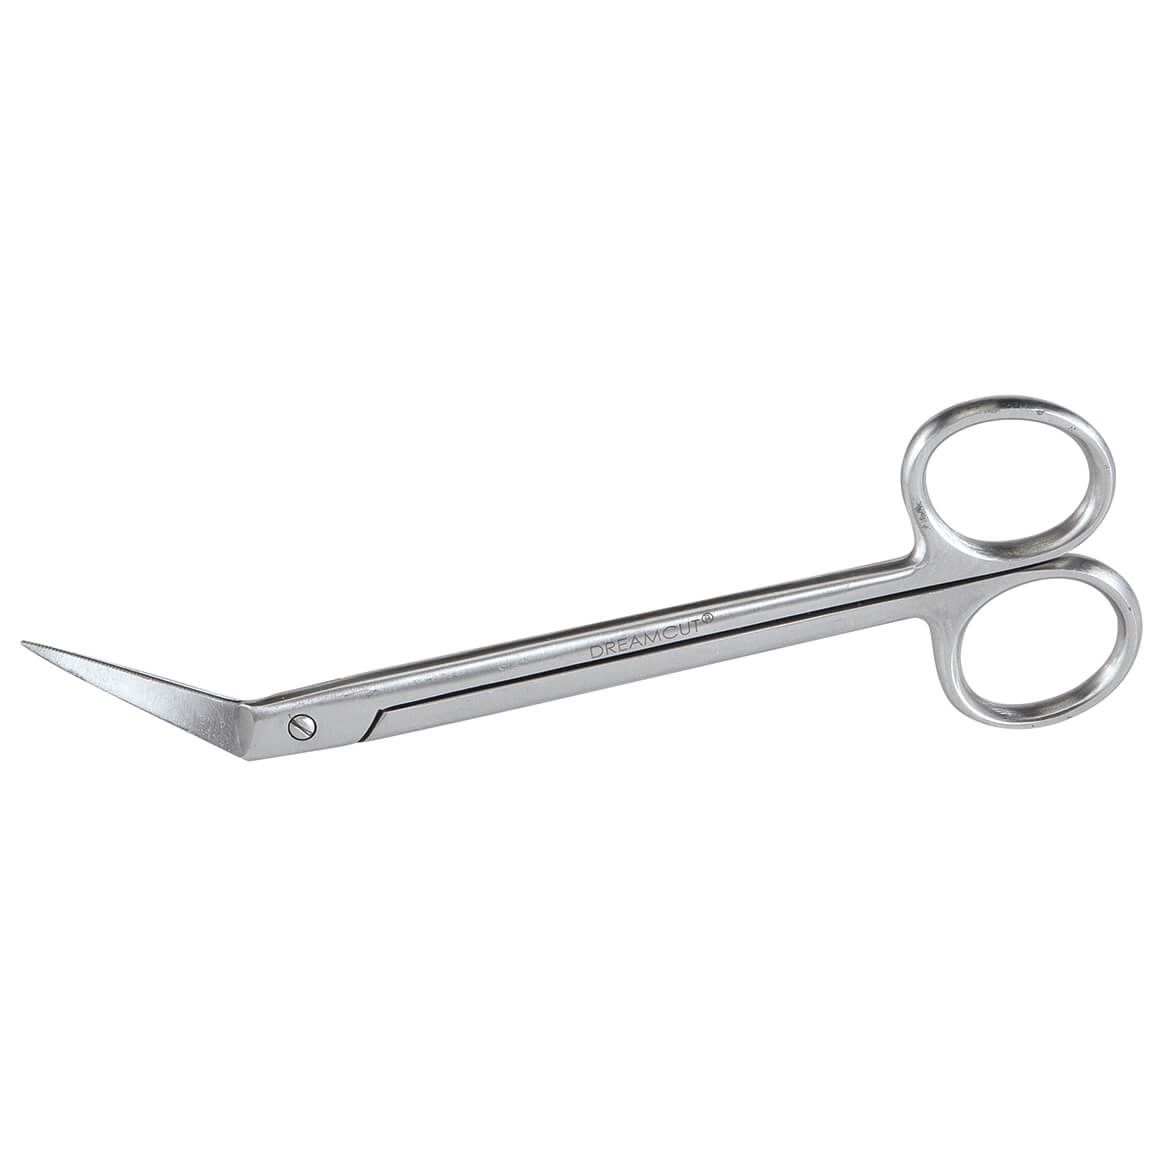 Long-Handled Toenail Scissors + '-' + 376837